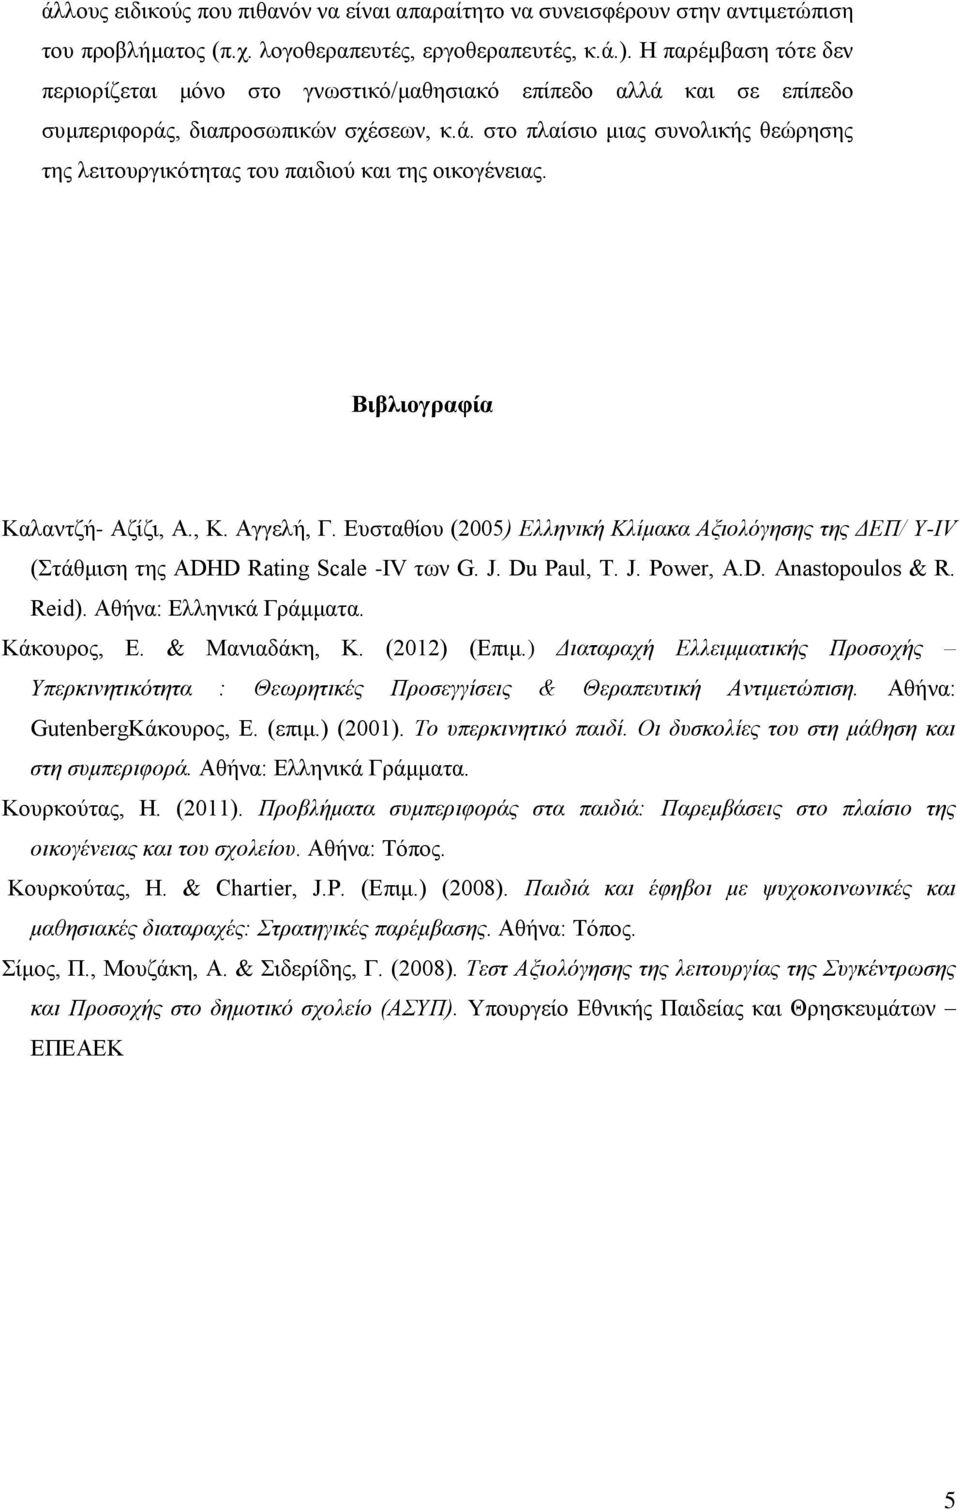 Βιβλιογραφία Καλαντζή- Αζίζι, Α., Κ. Αγγελή, Γ. Ευσταθίου (2005) Ελληνική Κλίμακα Αξιολόγησης της ΔΕΠ/ Υ-ΙV (Στάθμιση της ADHD Rating Scale -IV των G. J. Du Paul, T. J. Power, A.D. Anastopoulos & R.